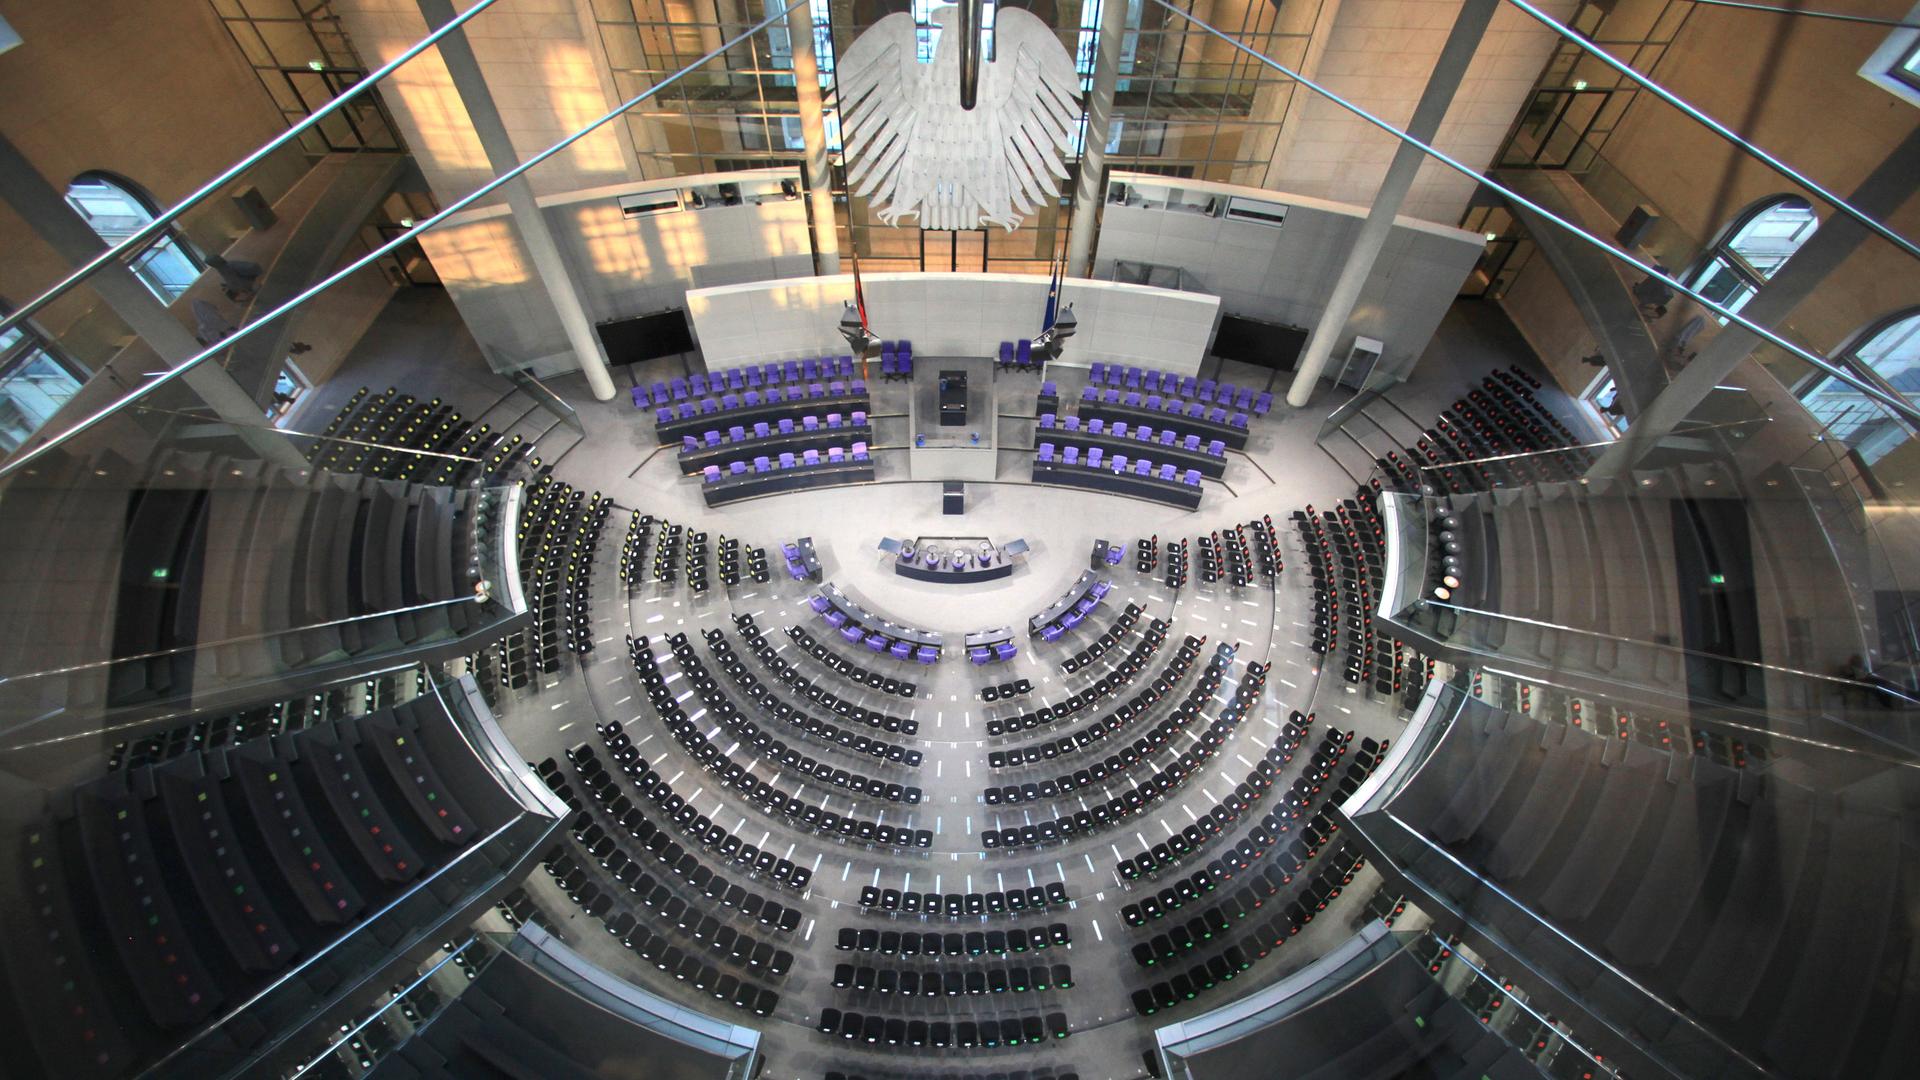 Der Plenarsaal des Deutschen Bundestages, aufgenommen in Berlin im März 2012. Die Sitze der Parlamentarier sind leer, vorn im Saal ist der Bundesadler zu erkennen.